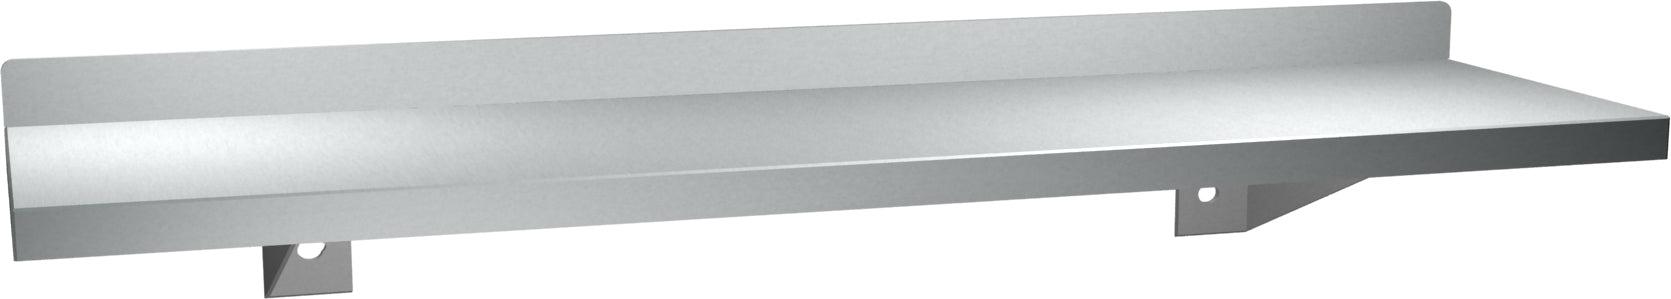 ASI 0694-18 Shelf With Backsplash, Stainless Steel, 5 X 18 Inch